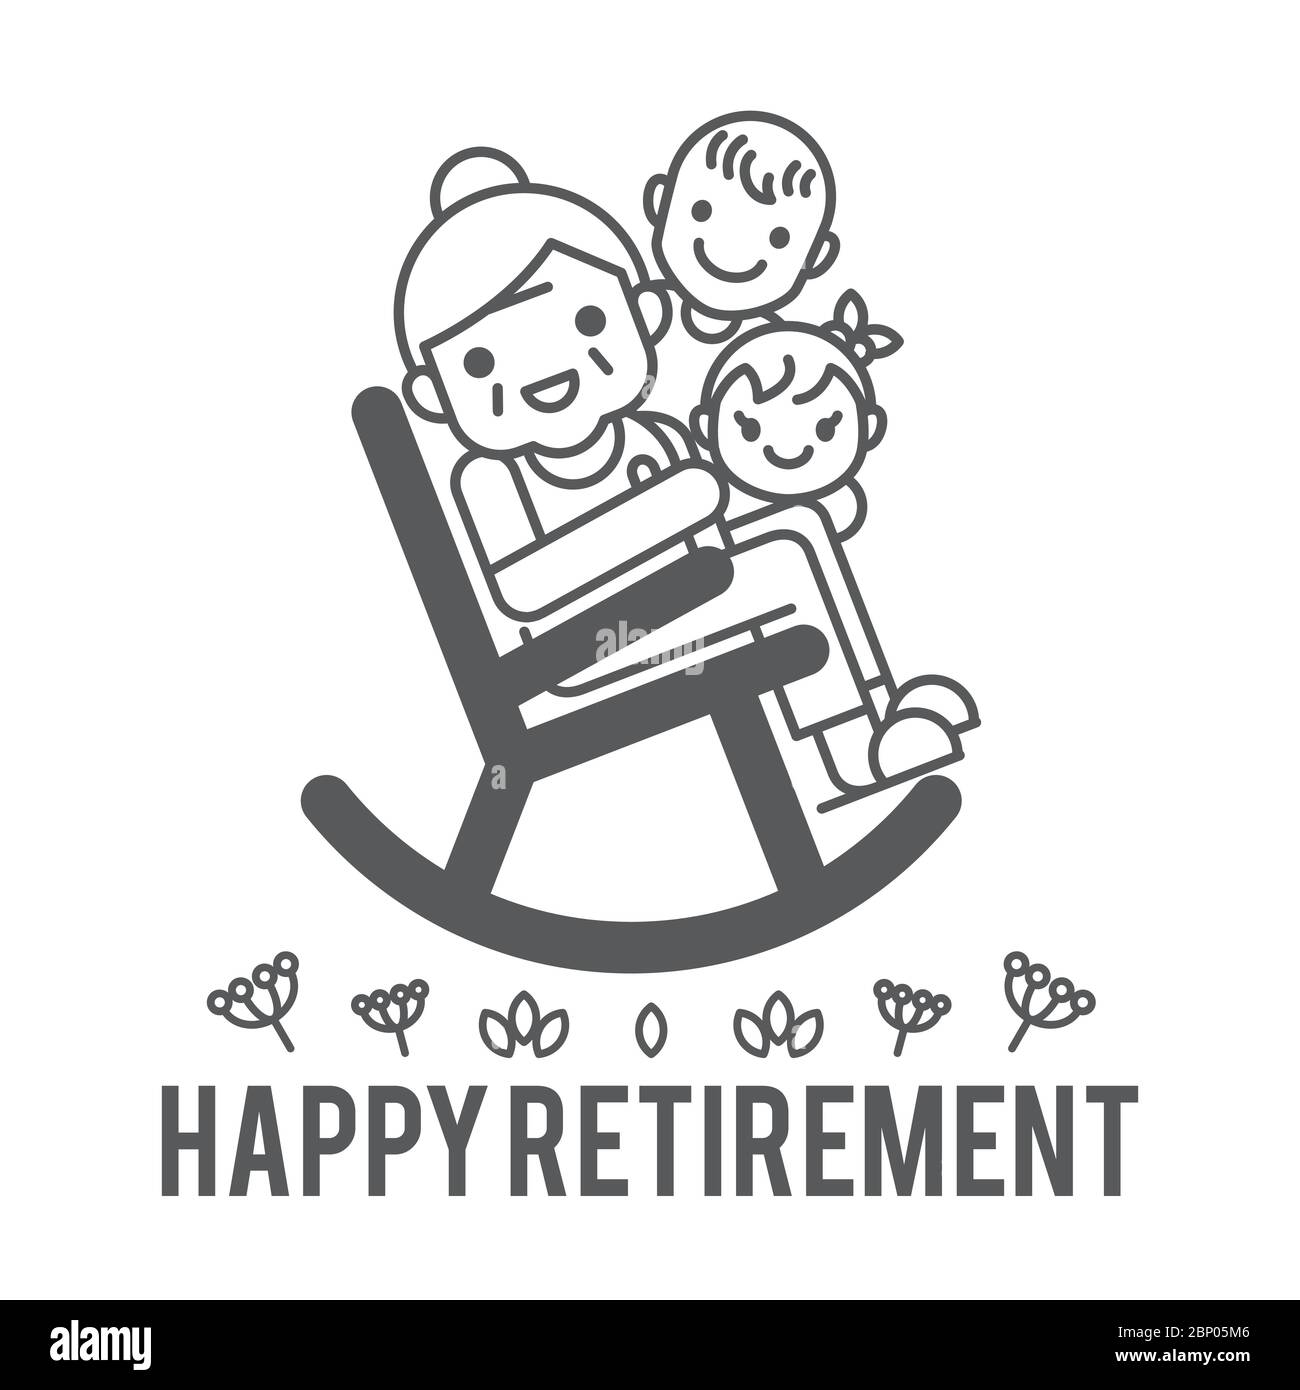 Glückliche Ruhestand Vektor-Illustration. Eine Großmutter sitzt auf Schaukelstuhl mit Jungen und Mädchen. Flaches Design. Stock Vektor